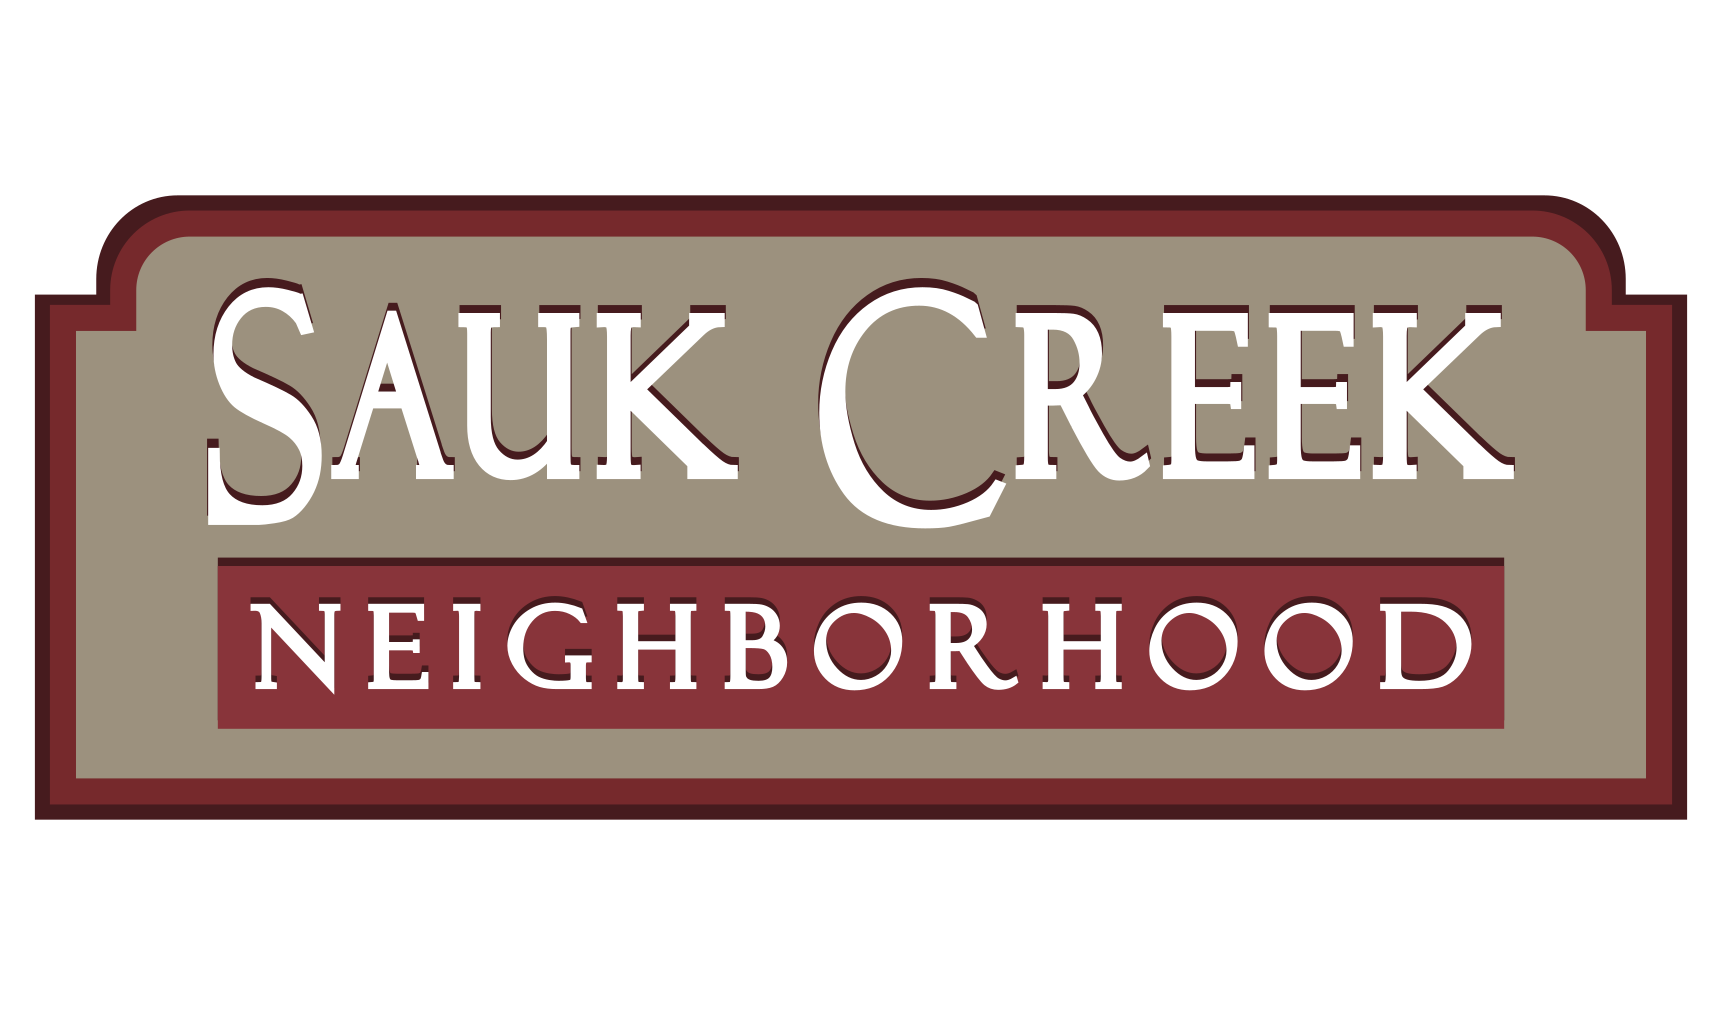 Sauk Creek Neighborhood Has Natural Appeal